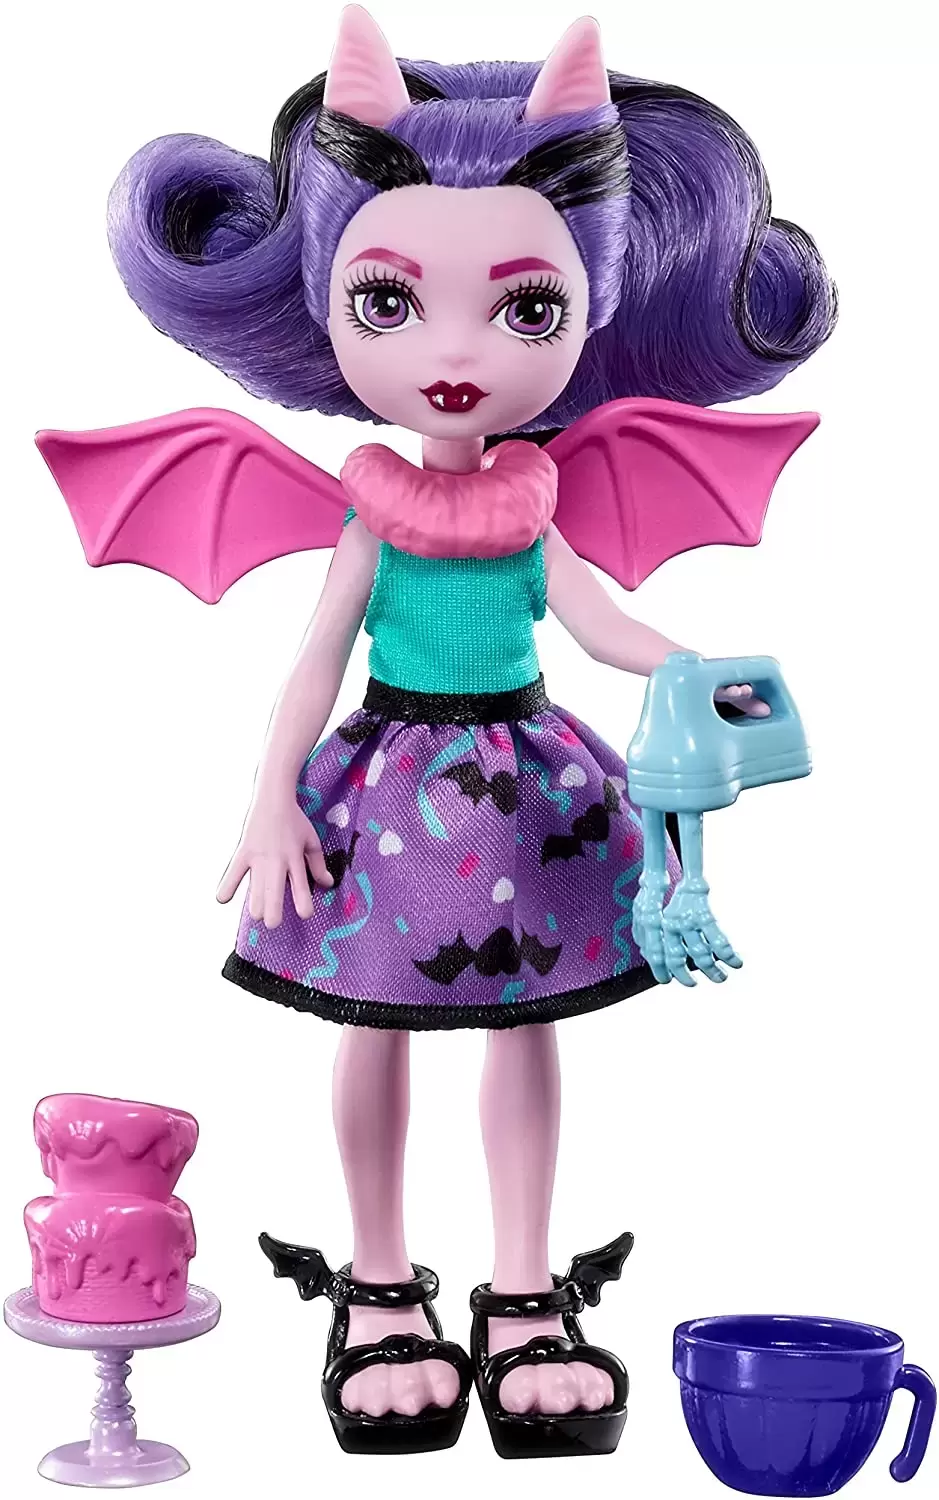 Monster High Dolls - Monster High Family - Fangelica